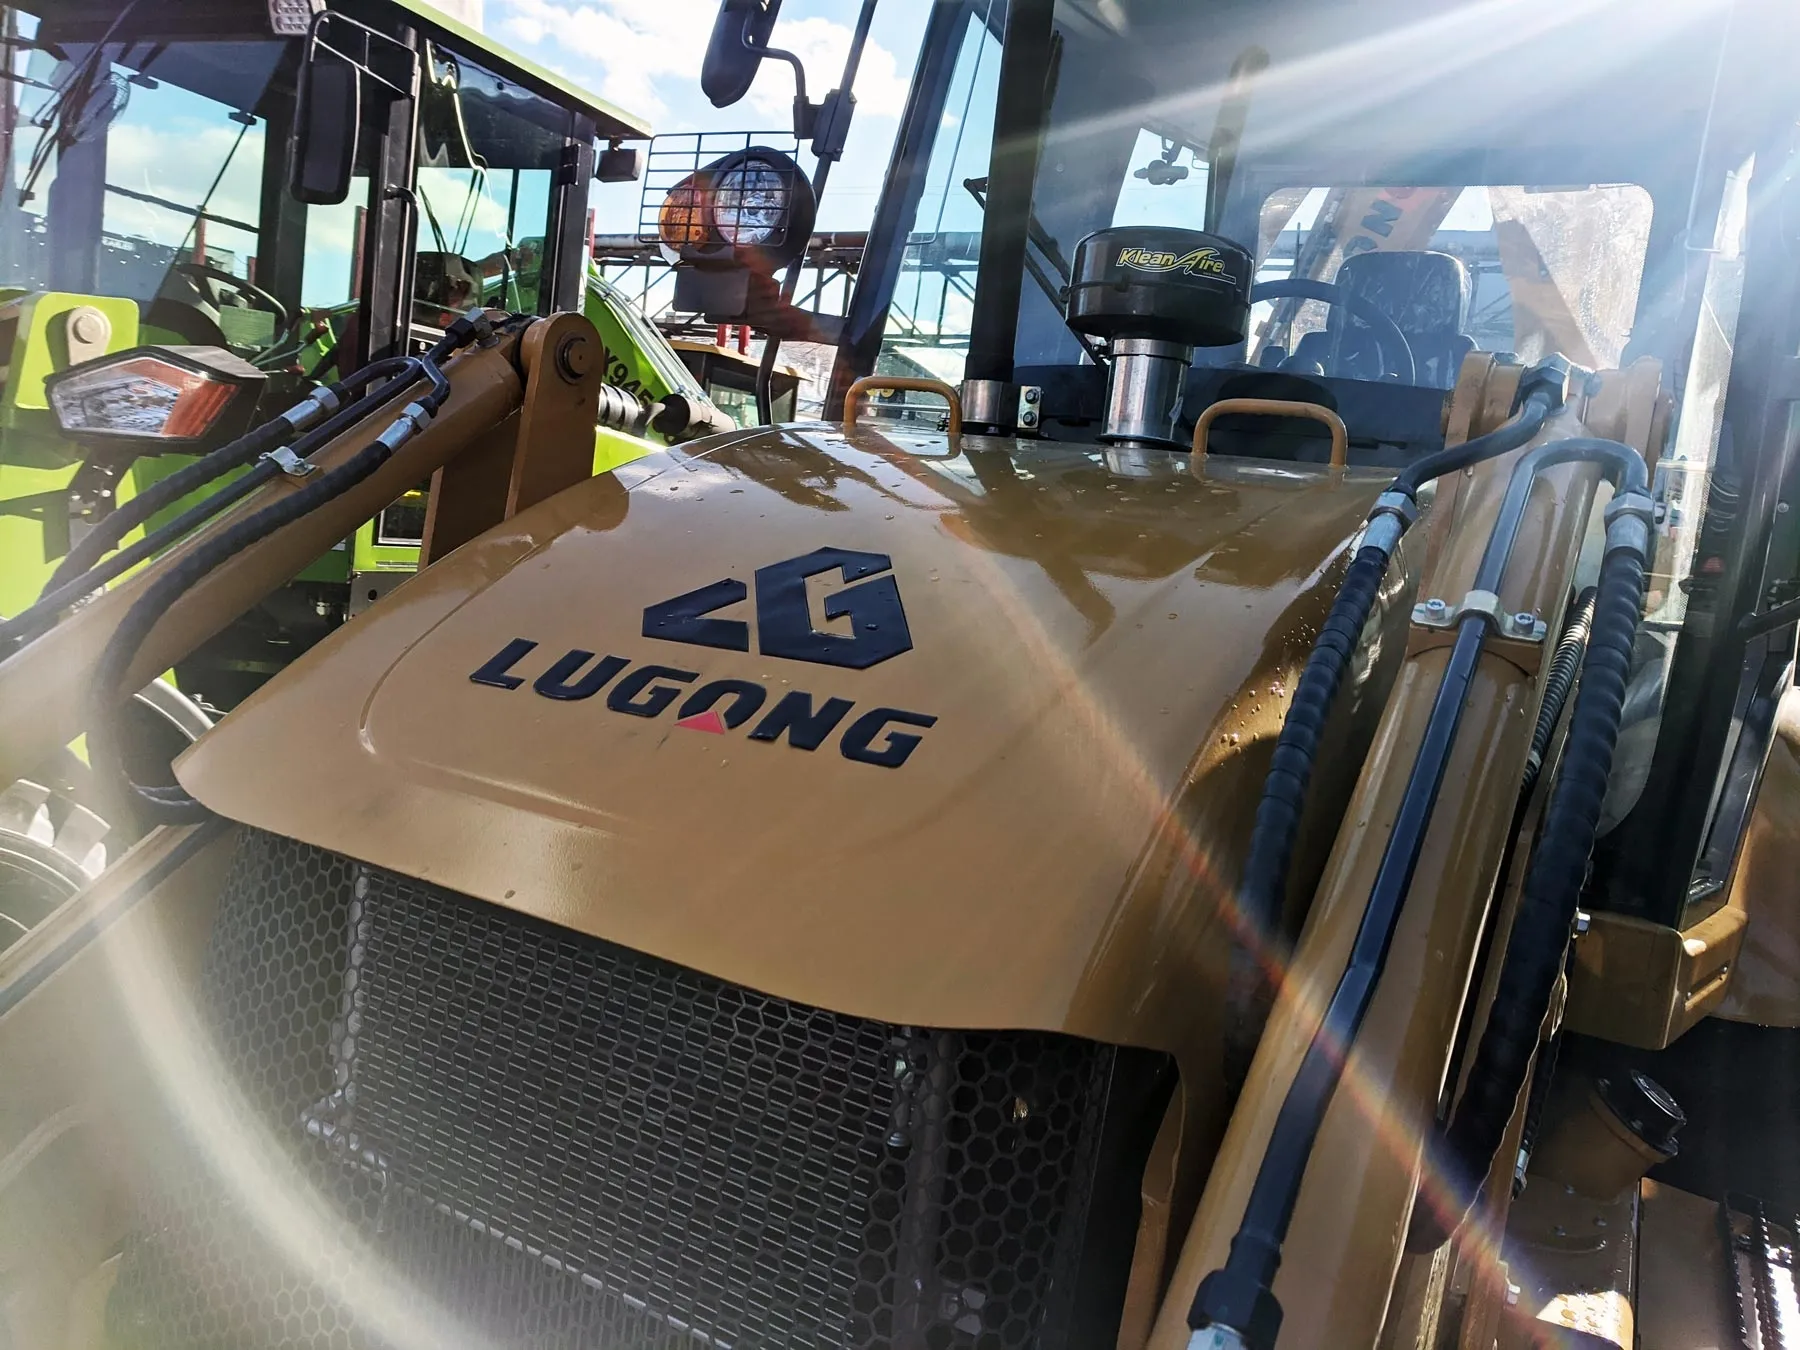 Экскаватор-погрузчик Lugong модель LG388 со склада в Санкт-Петербурге